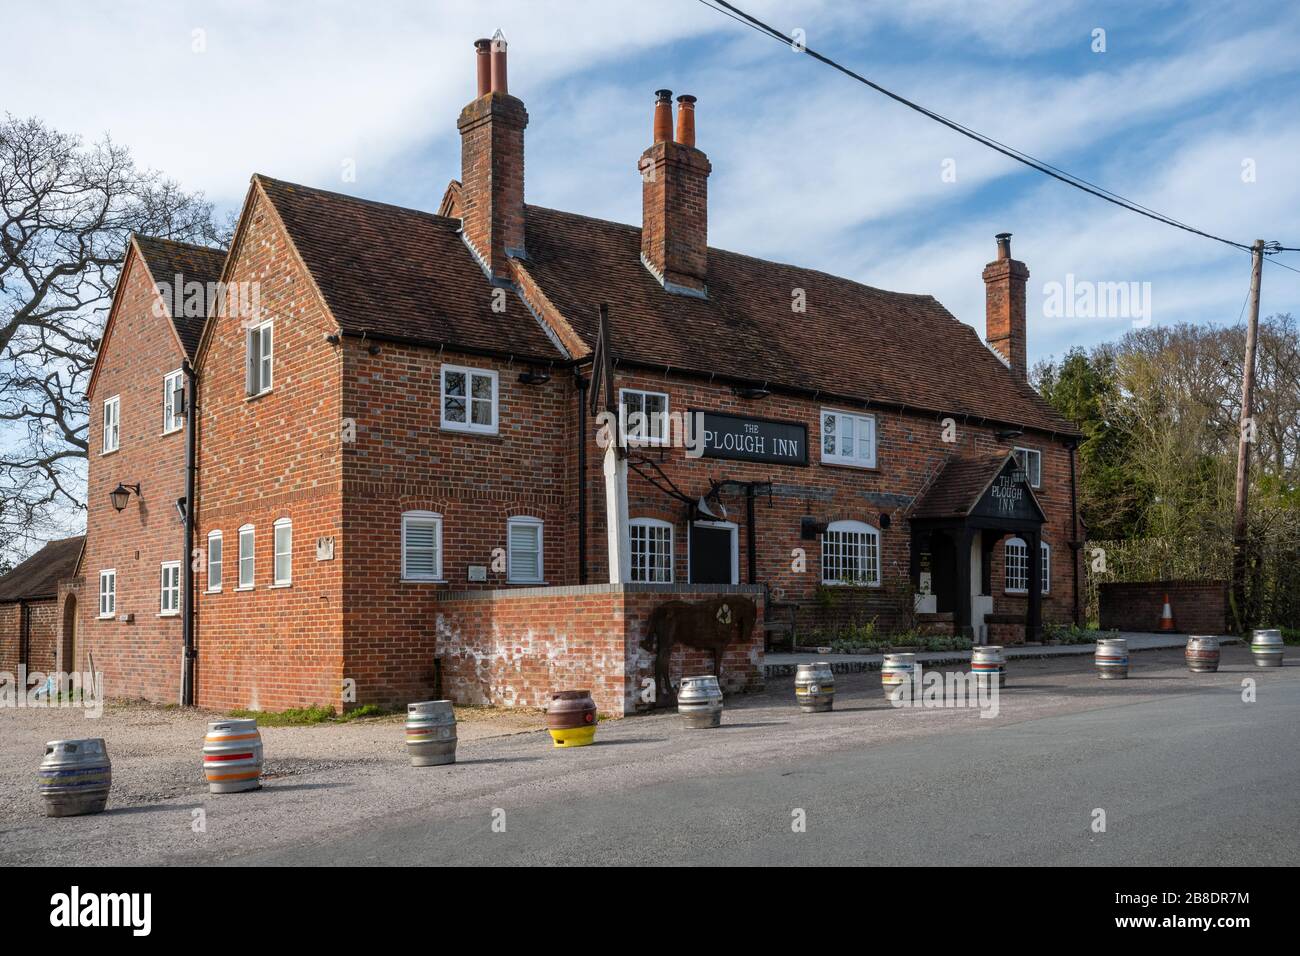 Englisches Pub wegen der Kovid-19-Coronavirus-Pandemie geschlossen, wobei Bierfässer vorne aufgereiht waren. Das Plough Inn, Dorf Little London, Hampshire, Großbritannien Stockfoto